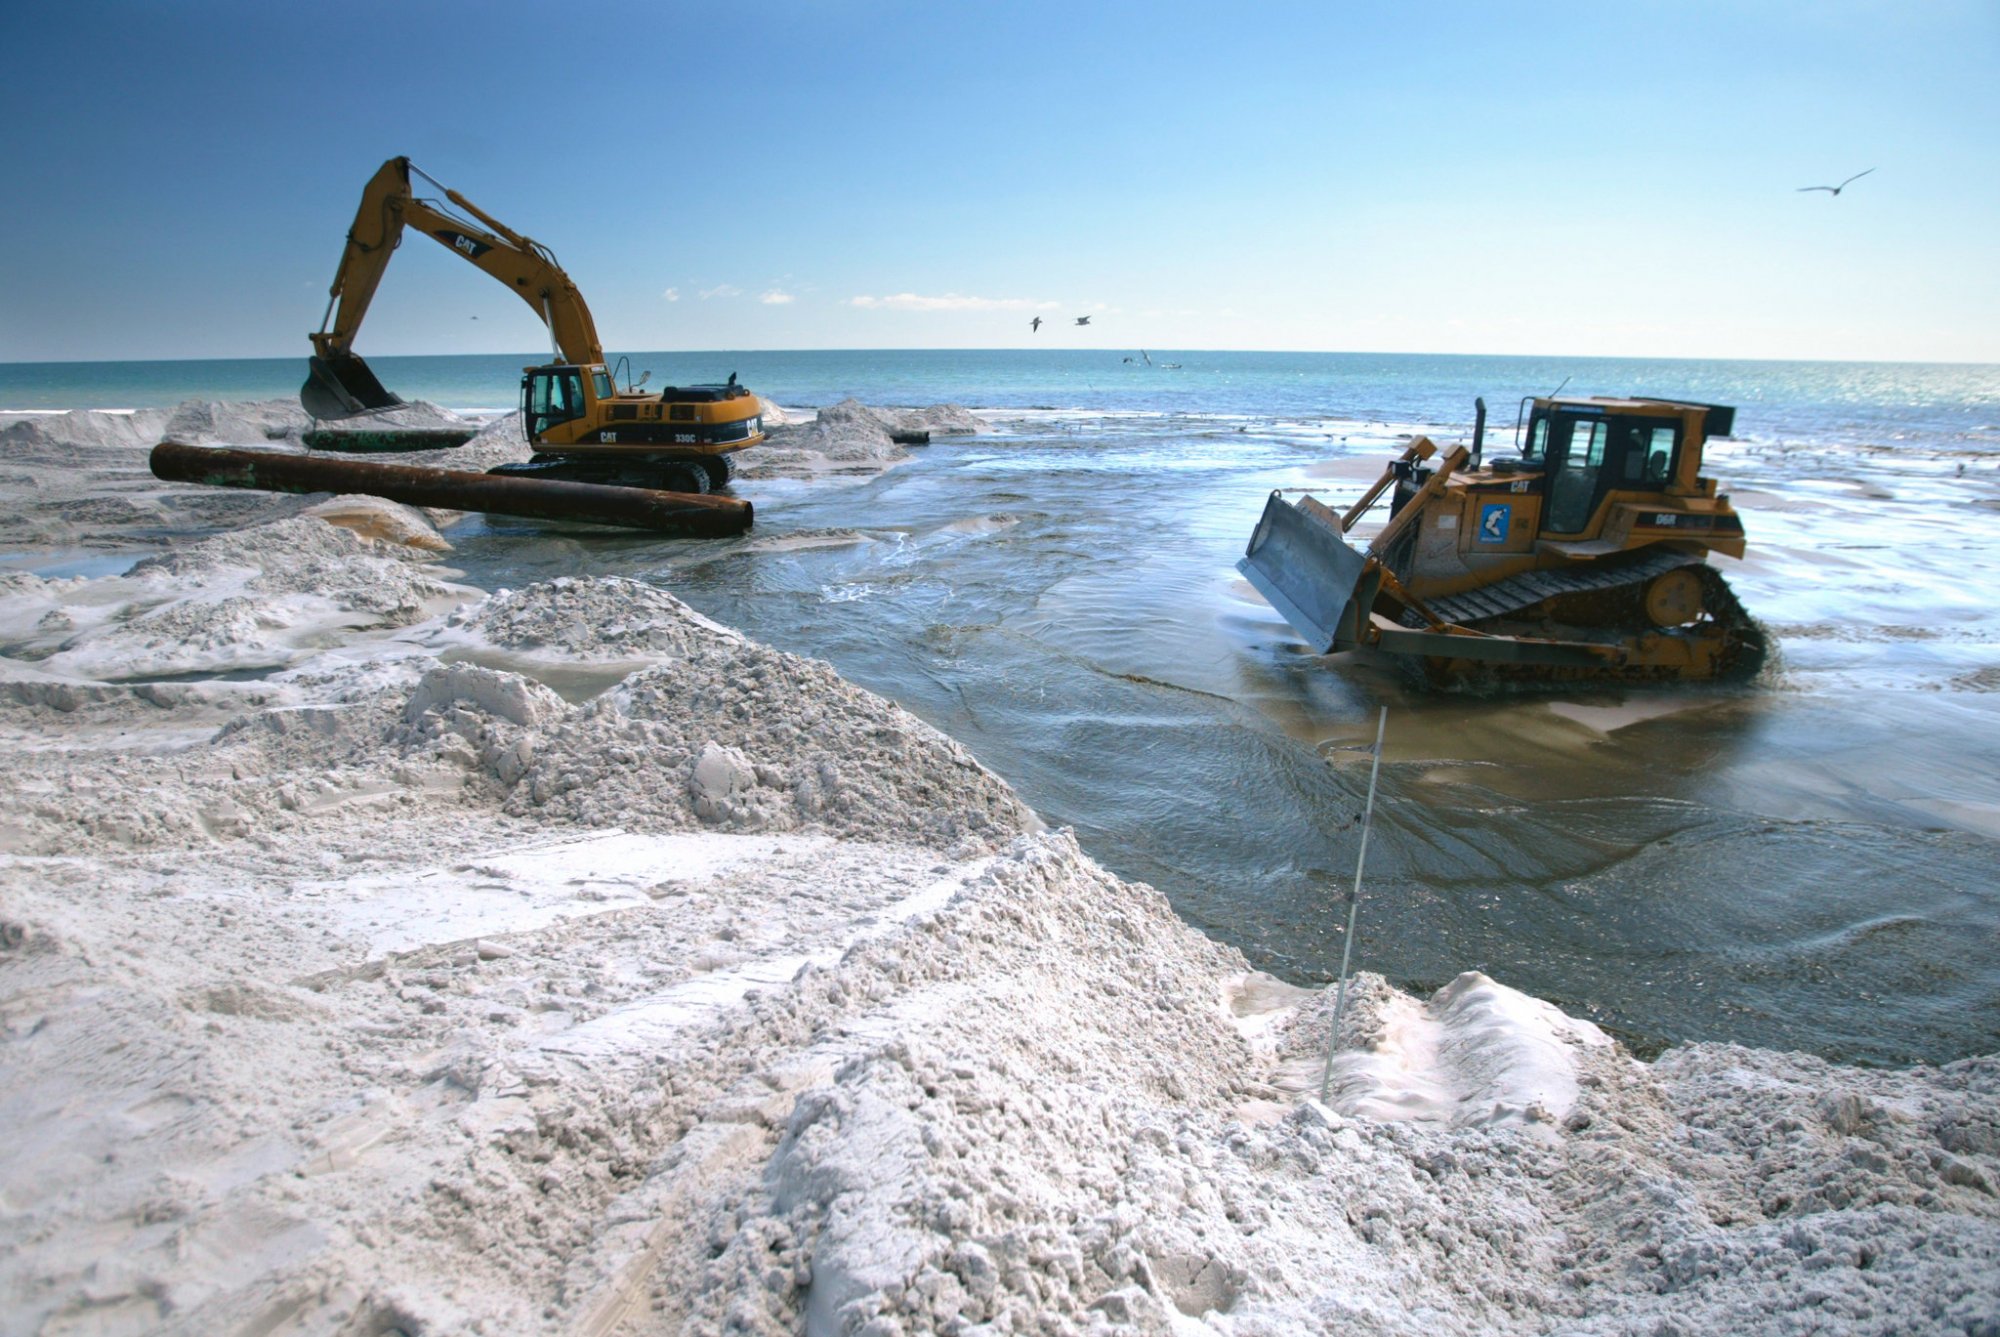 Ωκεανοί: Οι αμμοληψίες «αποστειρώνουν τον βυθό» προειδοποιεί ο ΟΗΕ